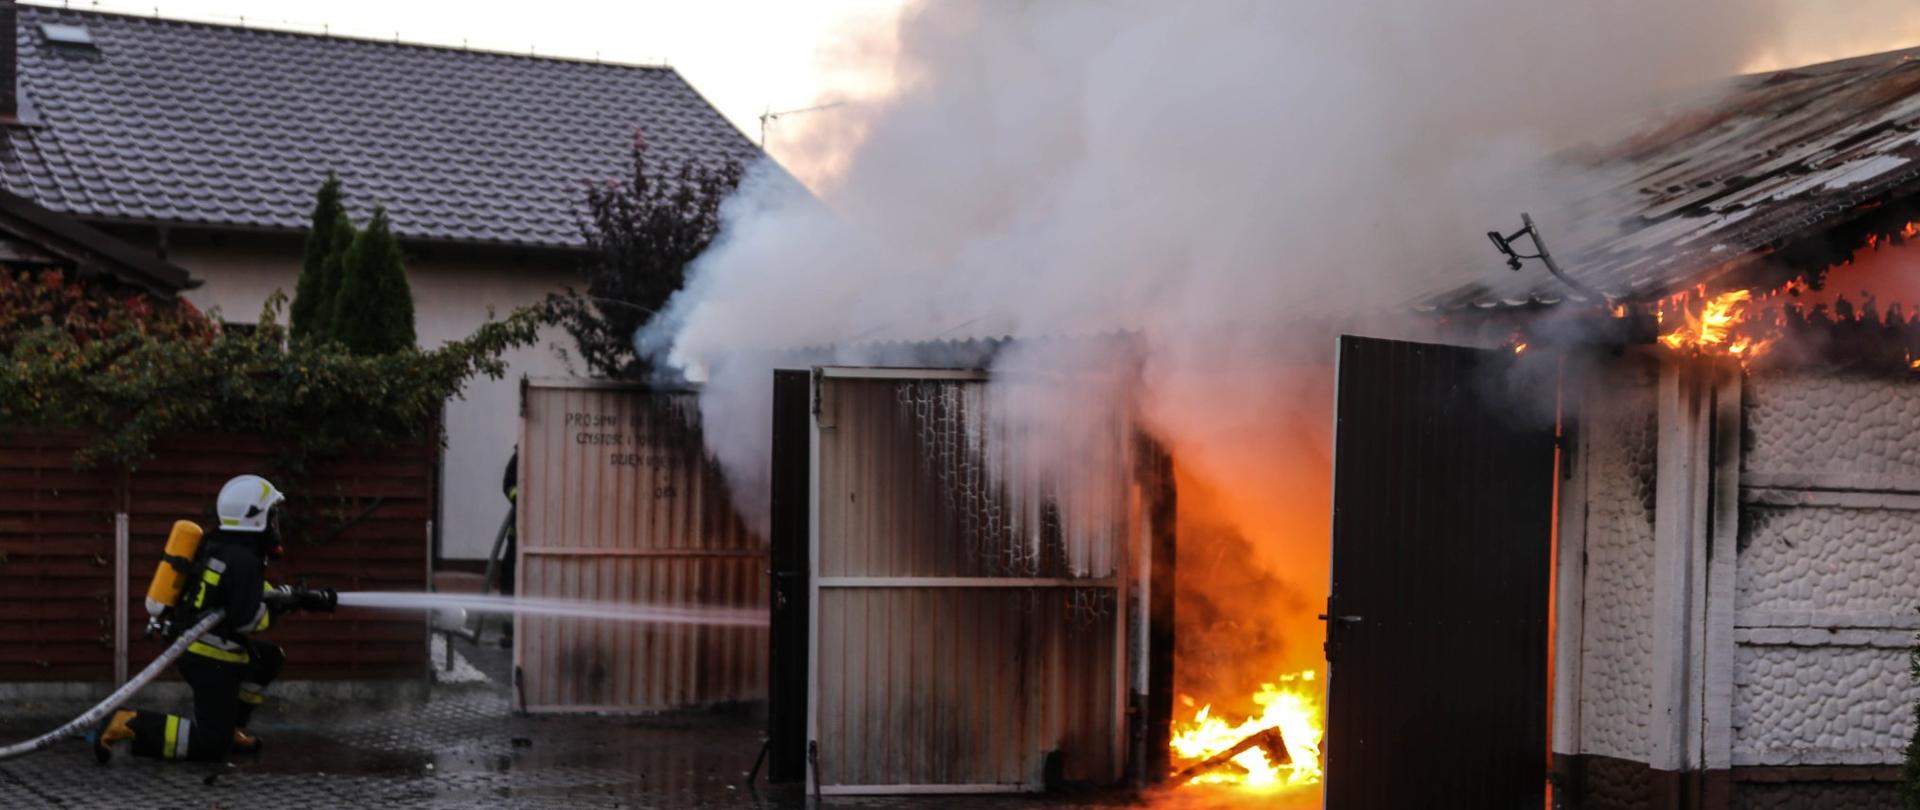 Zdjęcie przedstawia strażaka, który gasi pożar budynku garażowego dwustanowiskowego. Budynek wykonany z płyt betonowych, dach dwuspadowy wykonany z konstrukcji drewnianej pokryty blachą trapezową. Budynek cały w ogniu